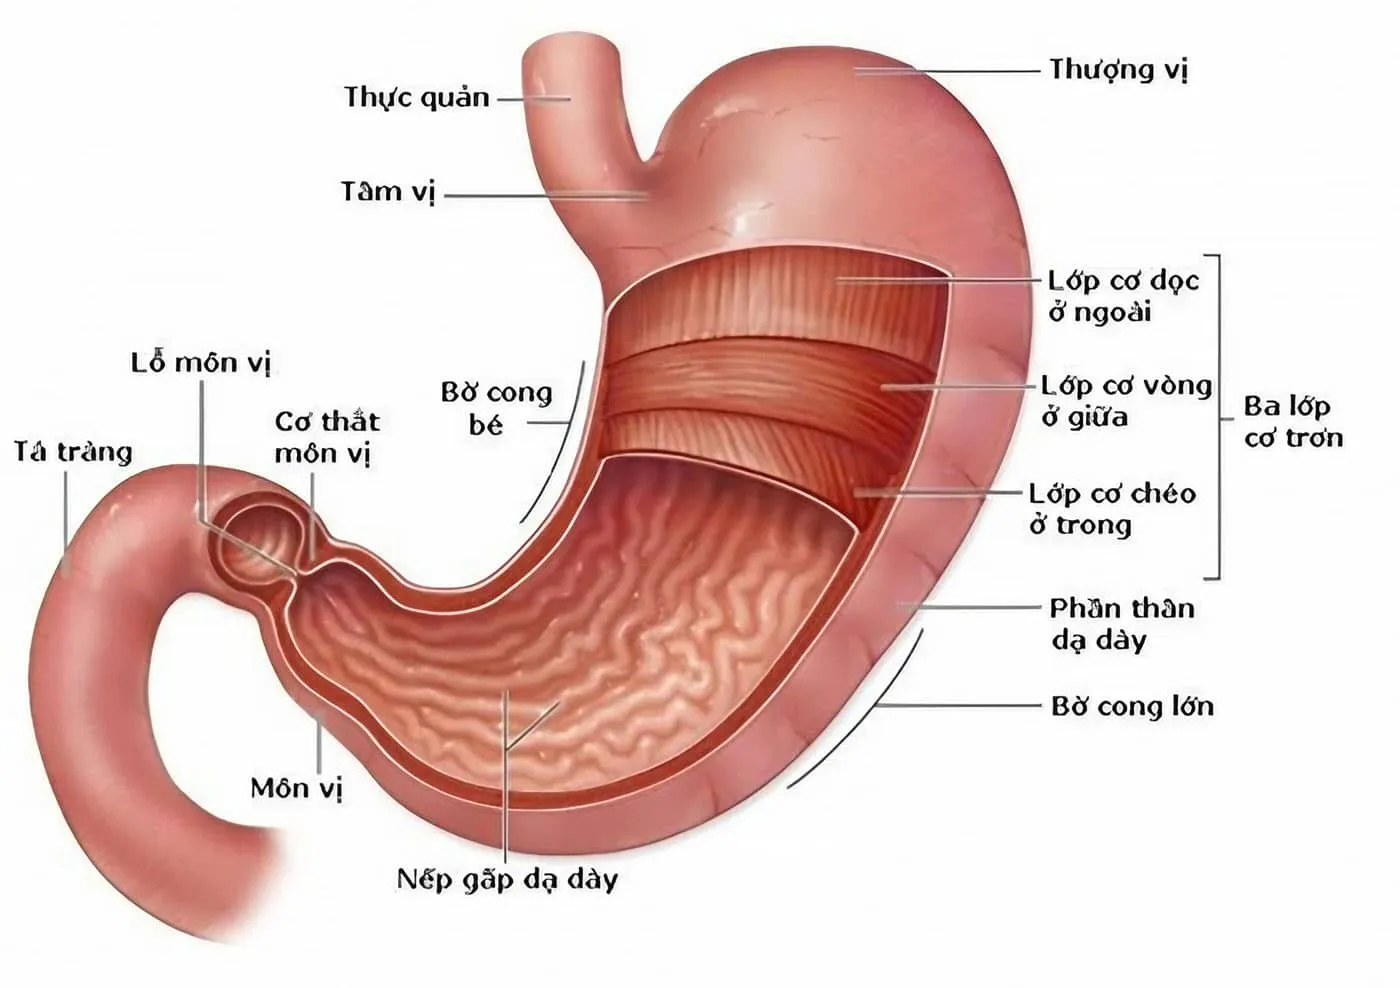 Giải phẫu dạ dày - Hình dáng và cấu tạo của dạ dày, bao tử